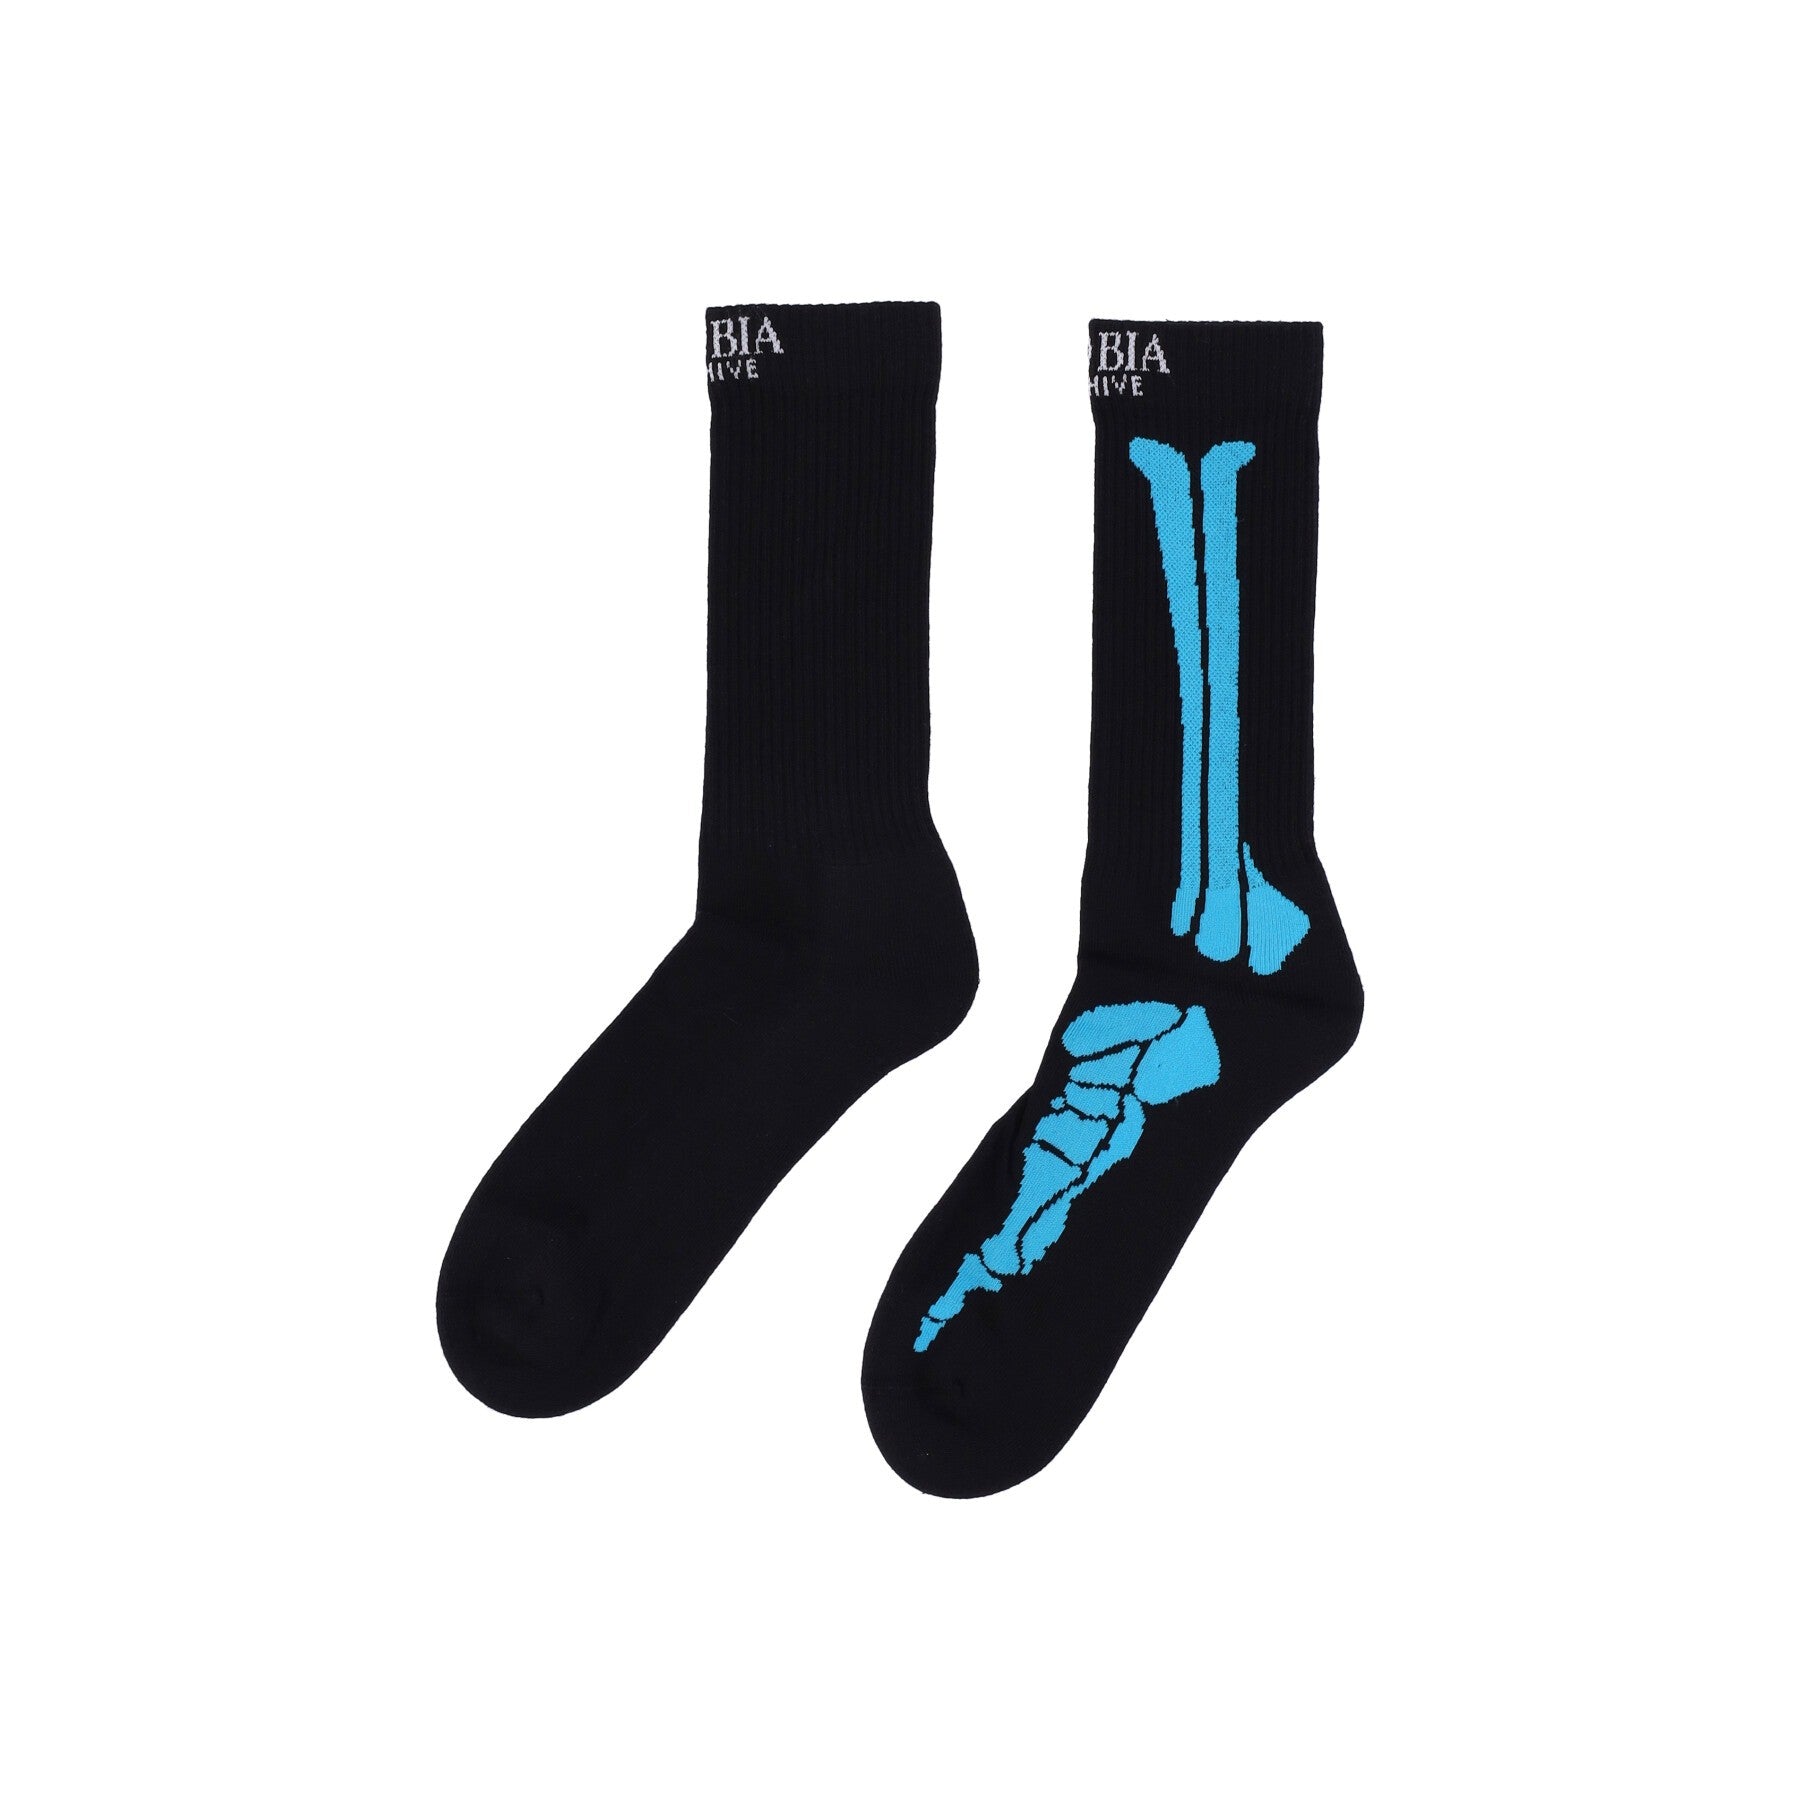 Phobia, Calza Media Uomo Bones Print Socks, Black/blue